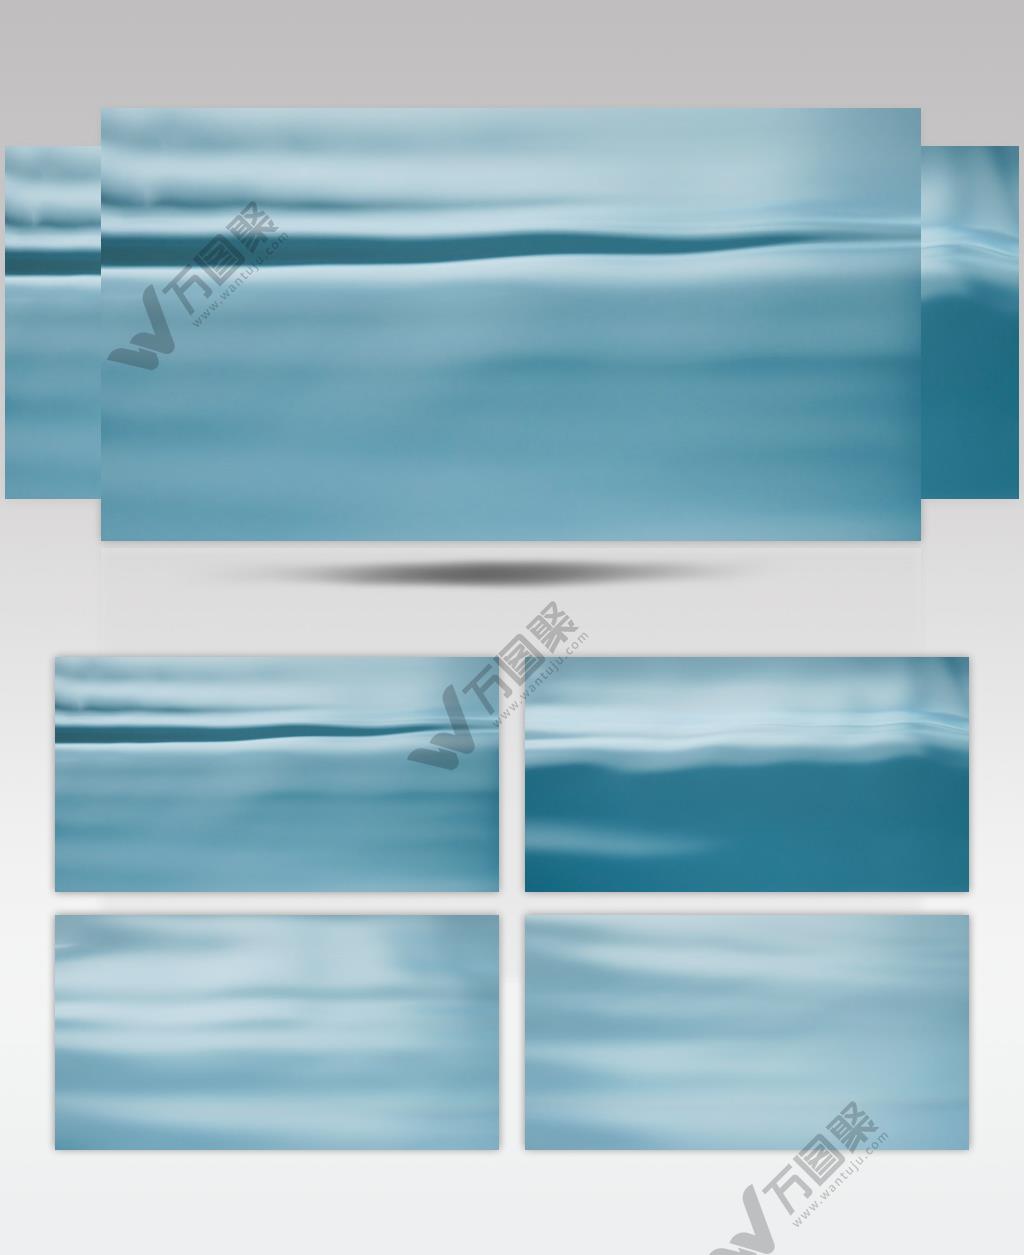 蓝色自来水面波纹波浪实拍空镜头